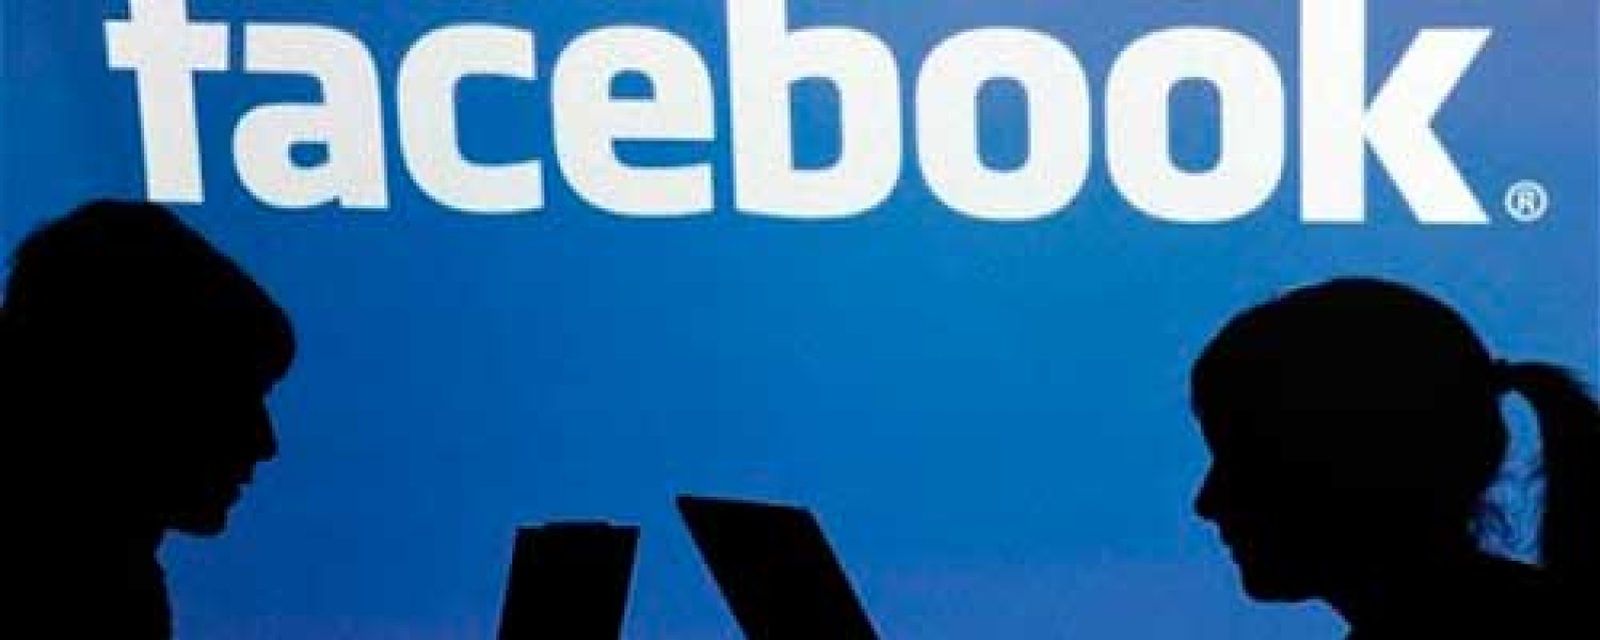 Foto: Facebook ofrecerá publicidad gratuita por valor de 5 millones de euros a pymes de toda Europa